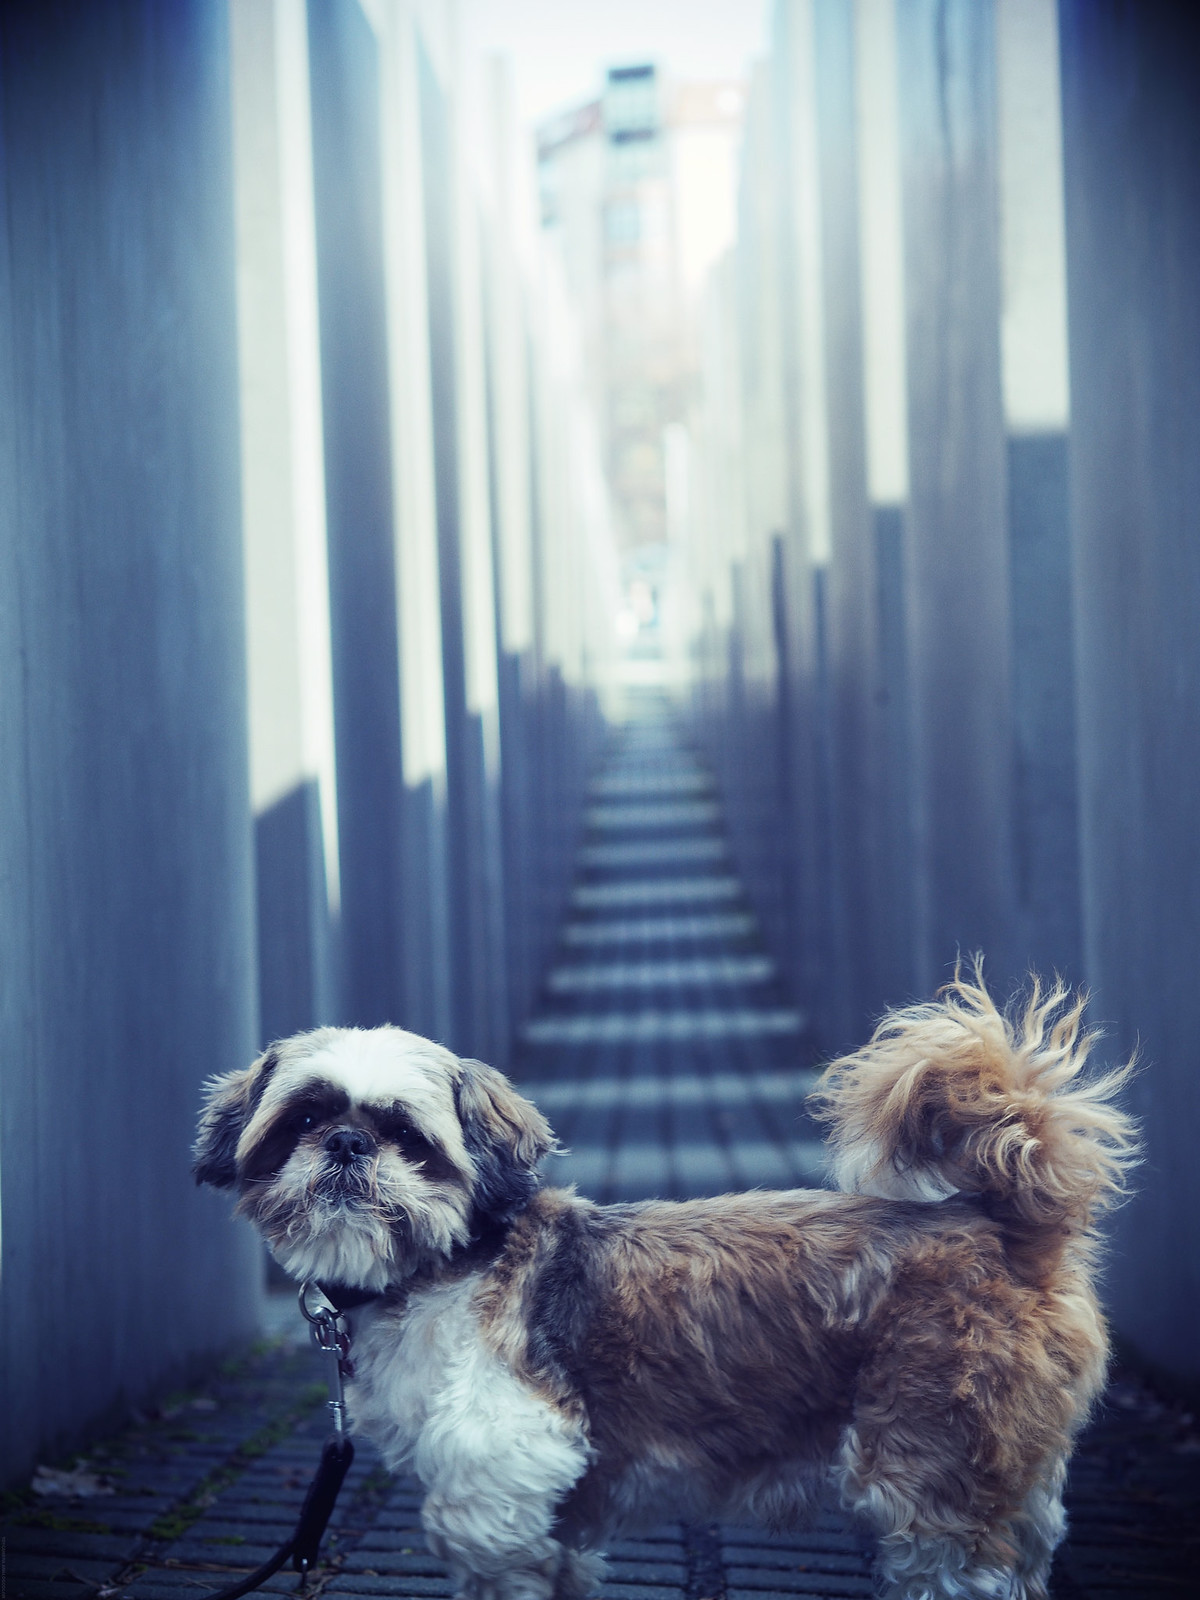 Dog Memorial Jews Berlin Guide Travel_effected